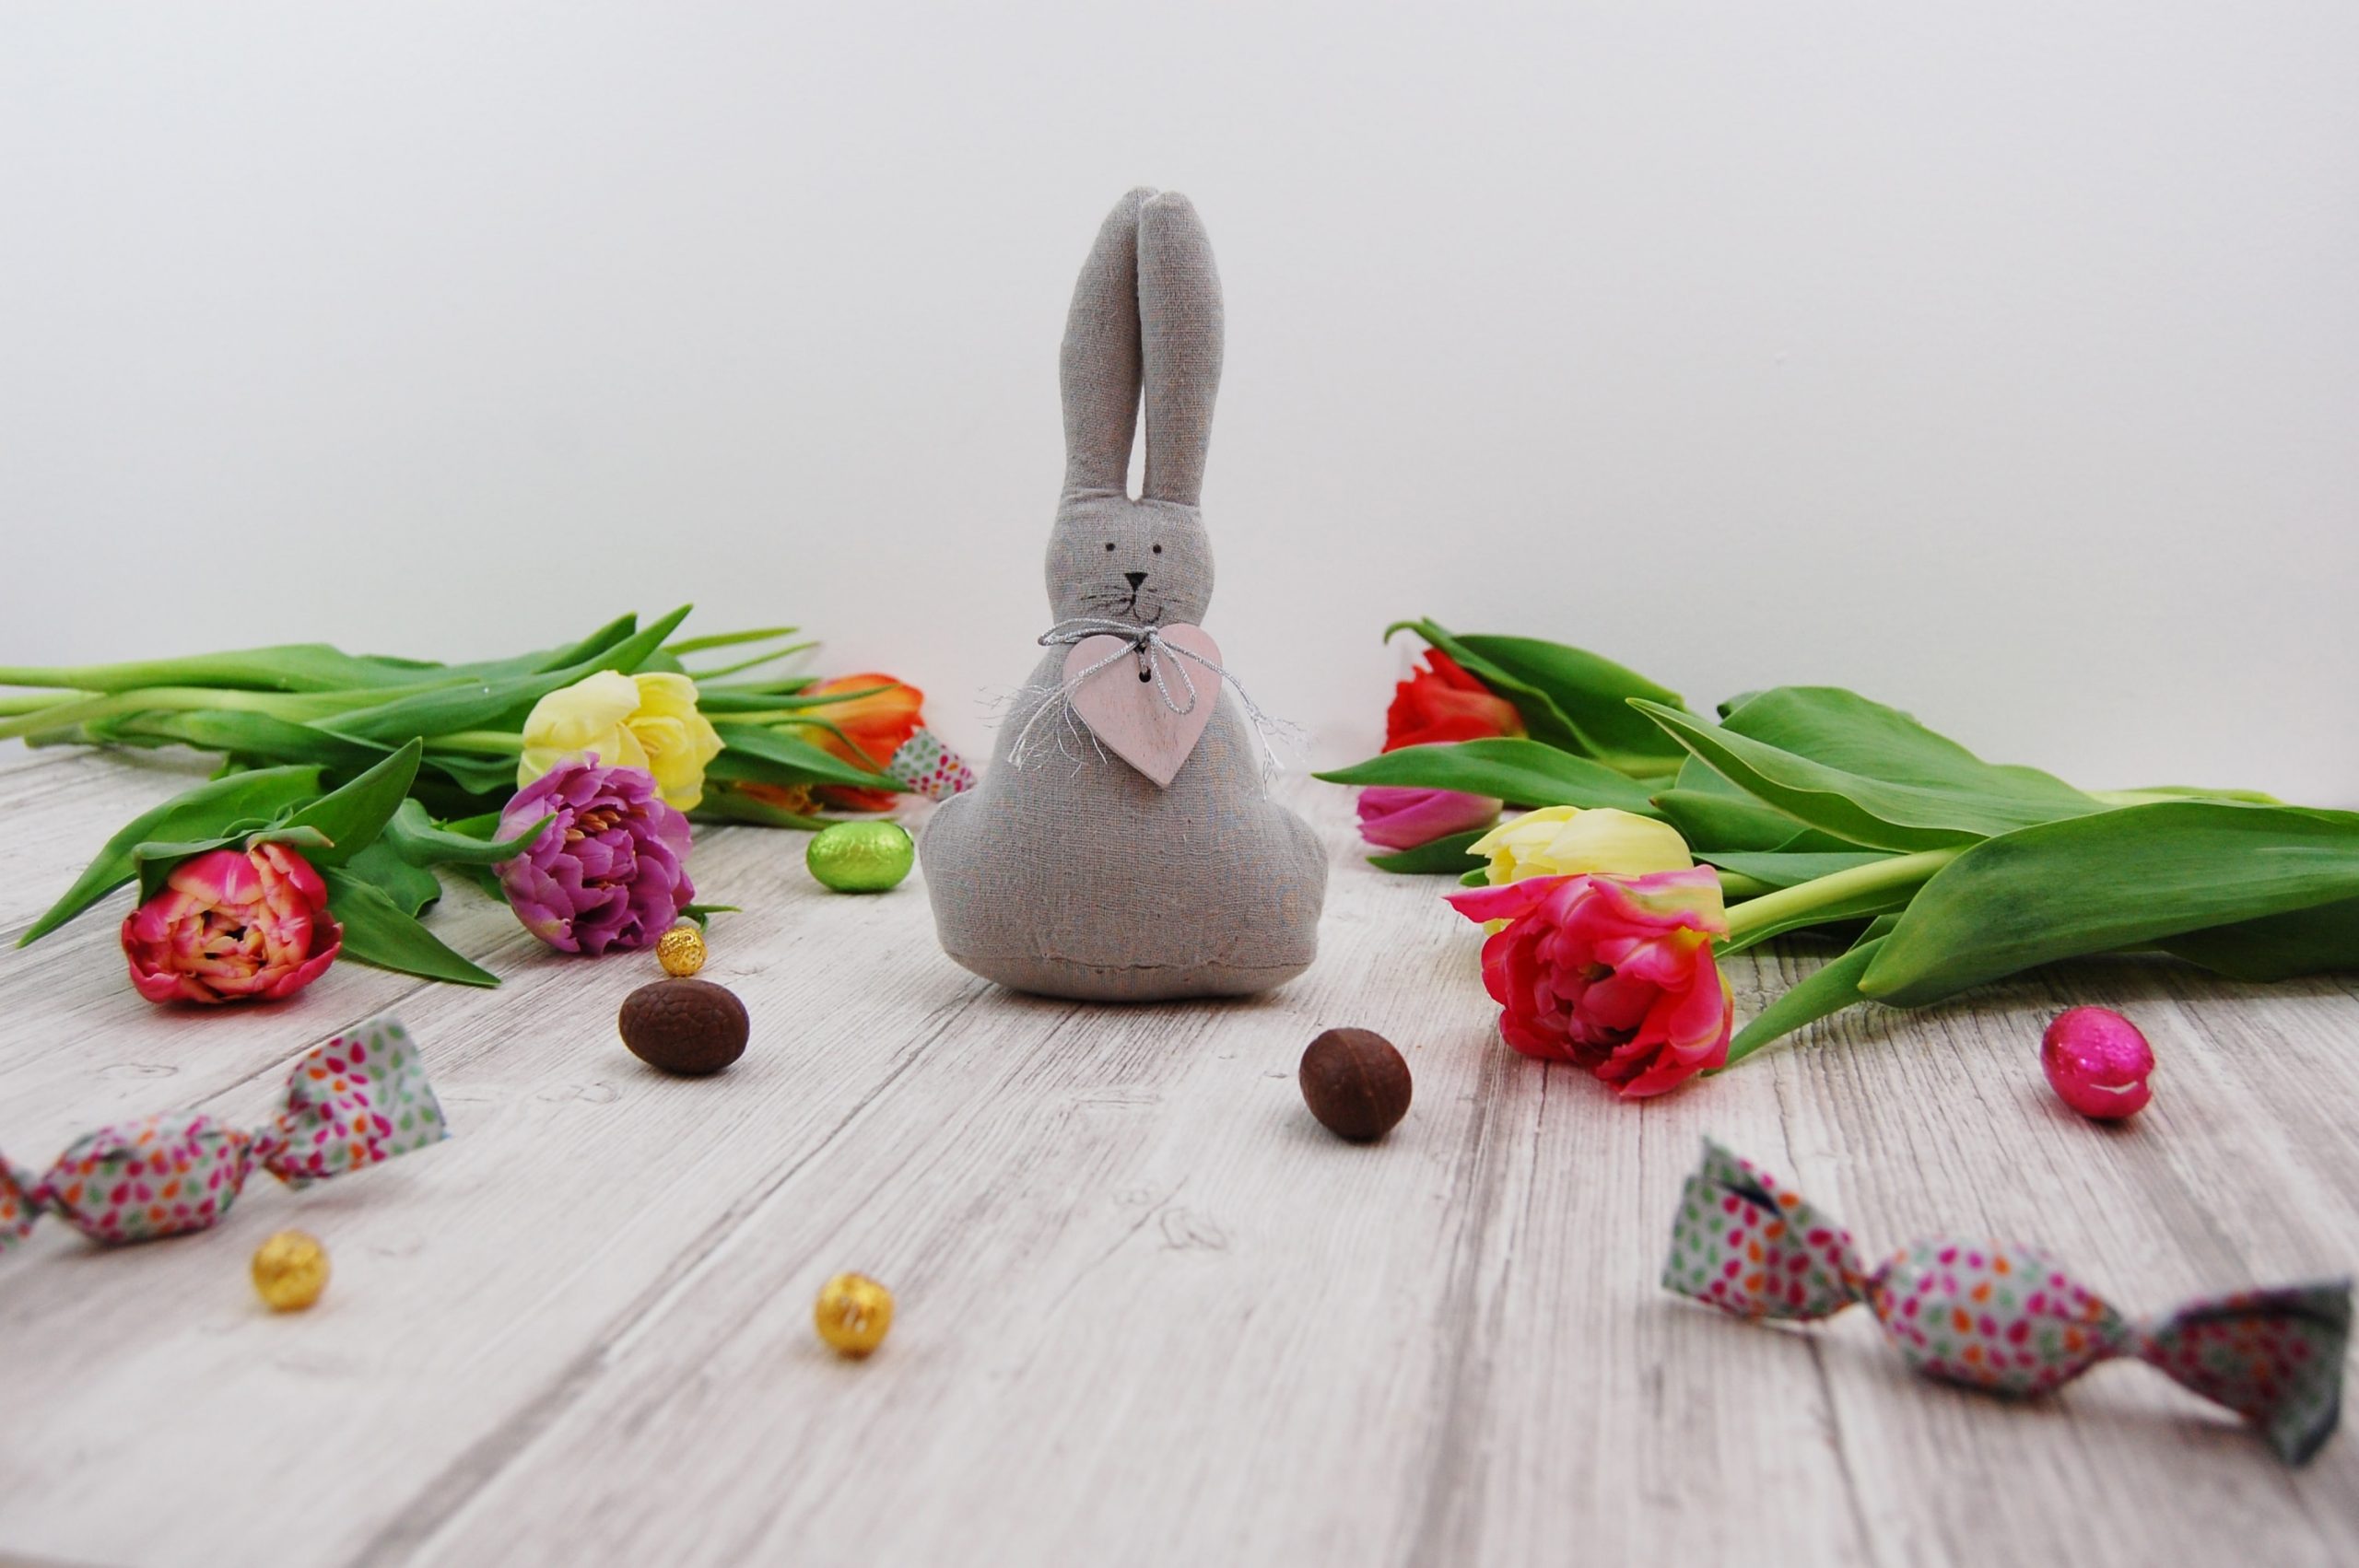 Pasqua – fiori e curiosità